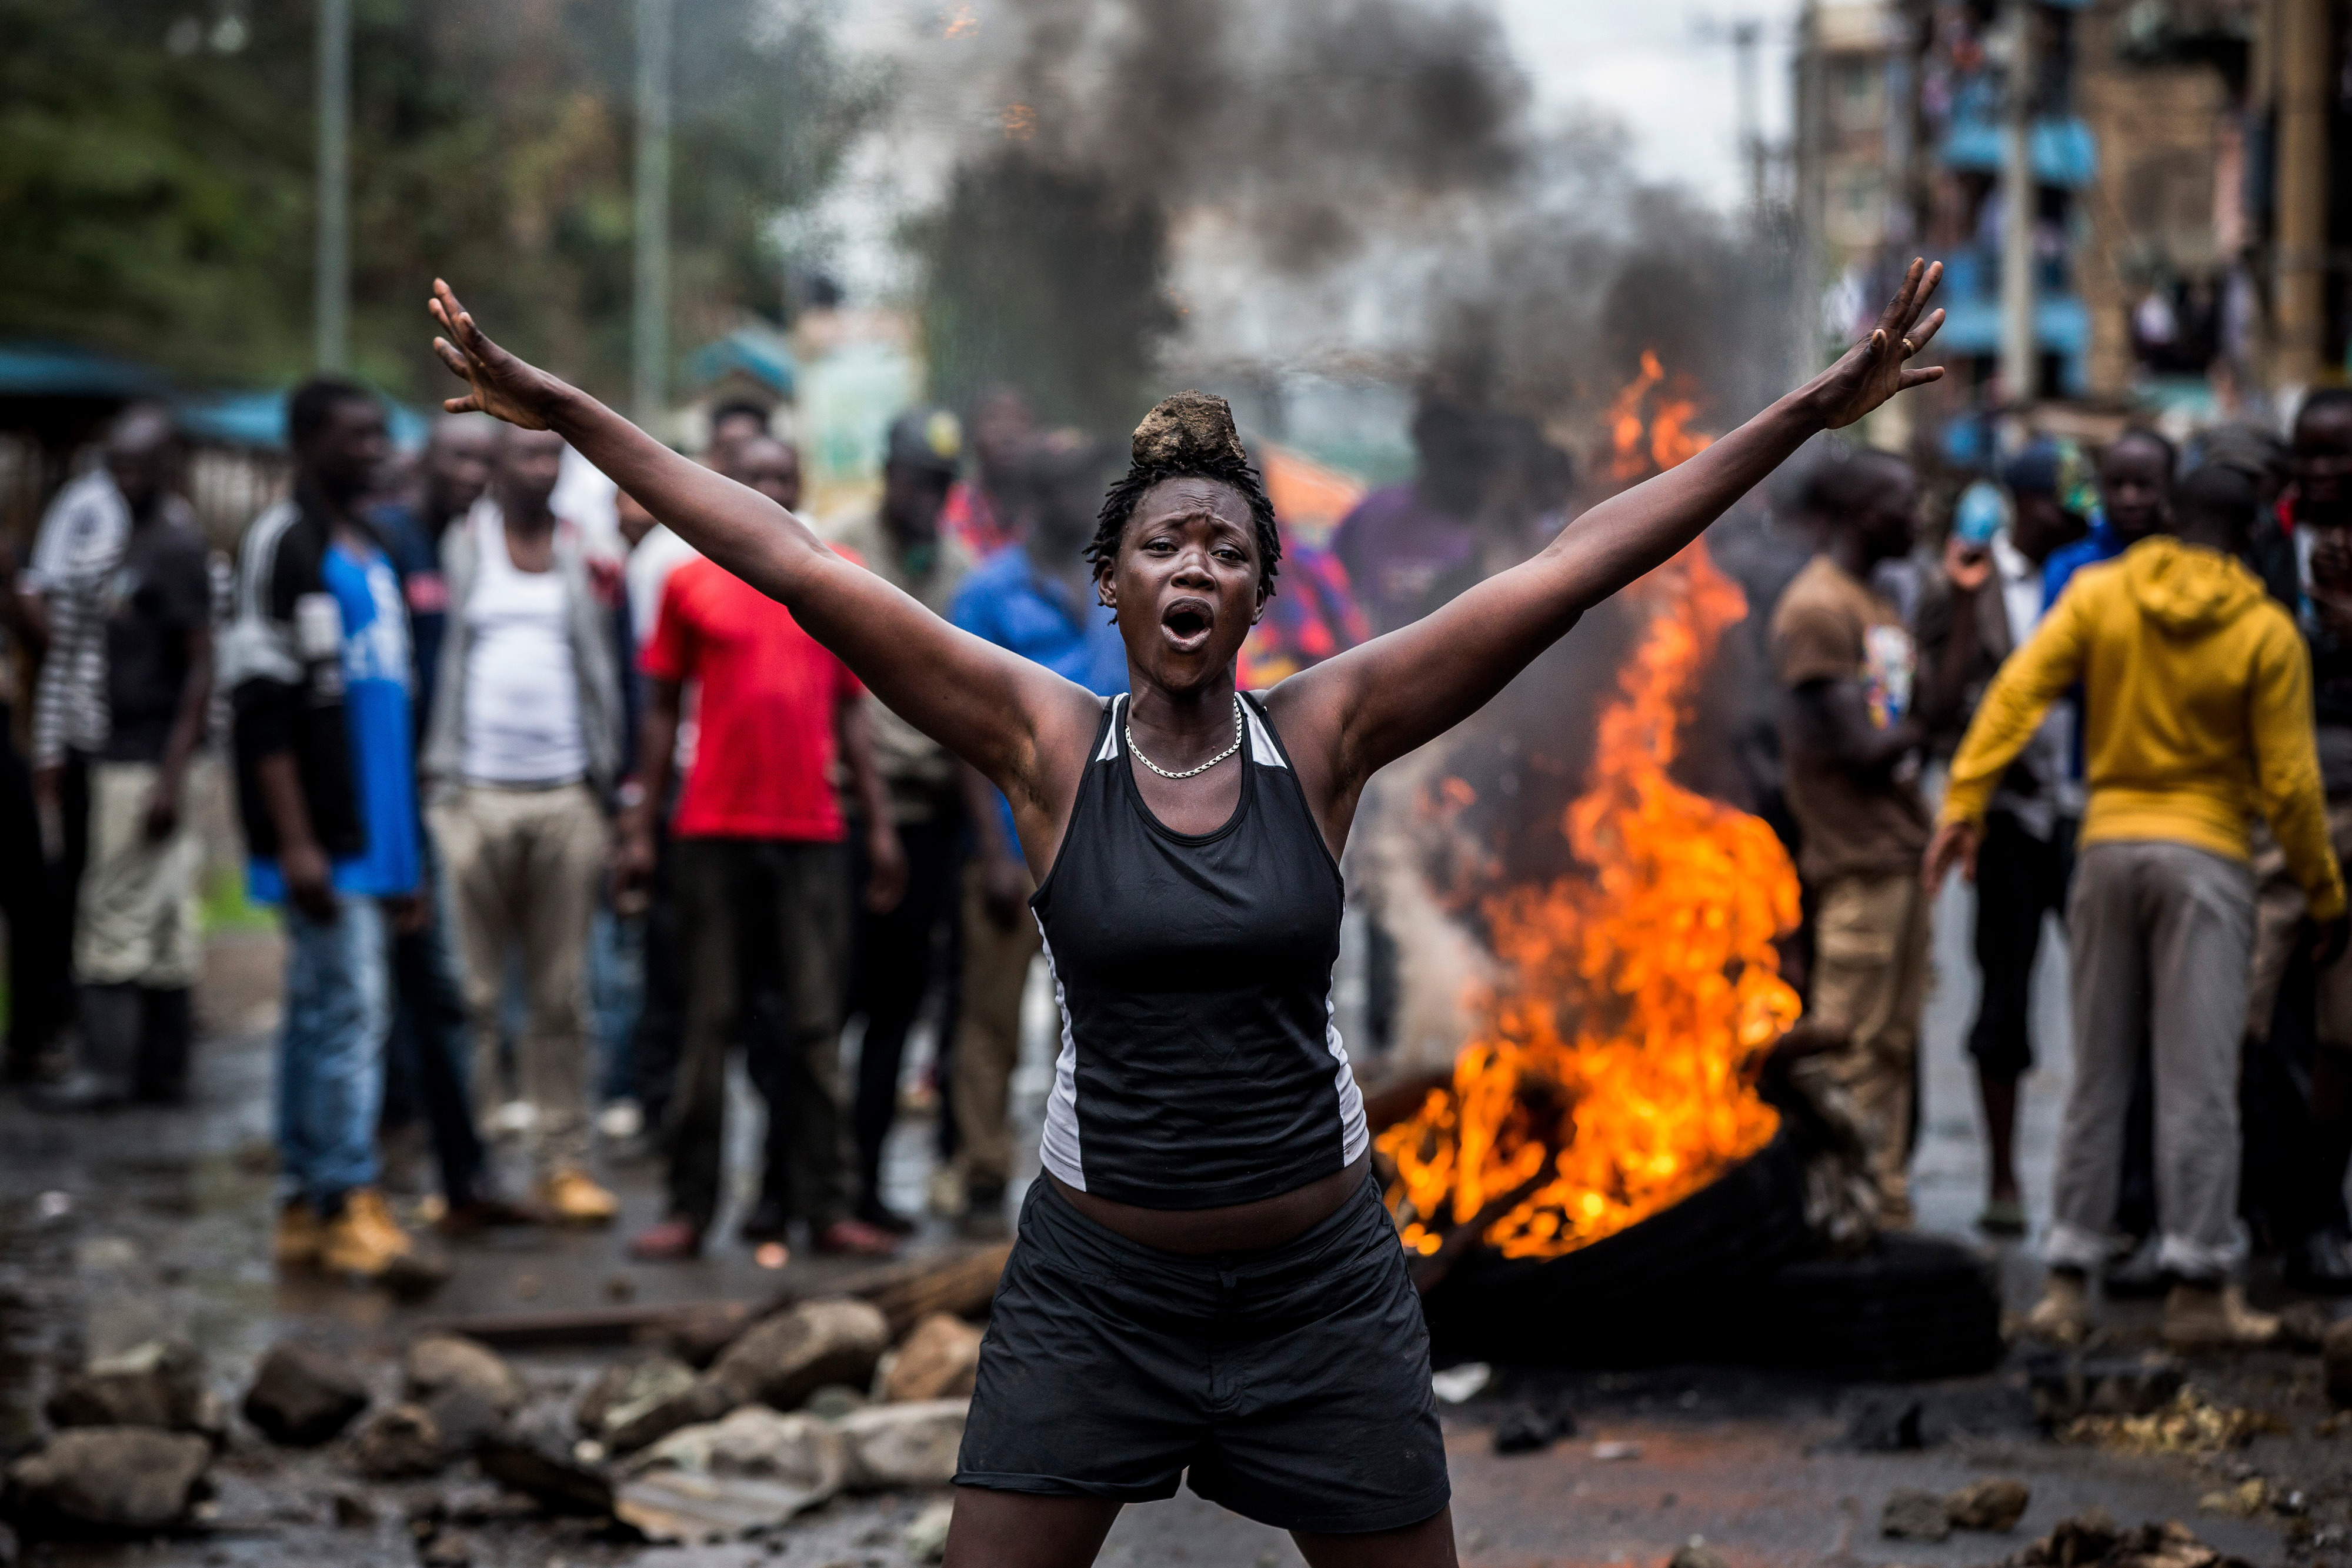 Беспорядки в Кении после выборов. Первое место в категории «Главные новости, серии». Луис Тато, Испания